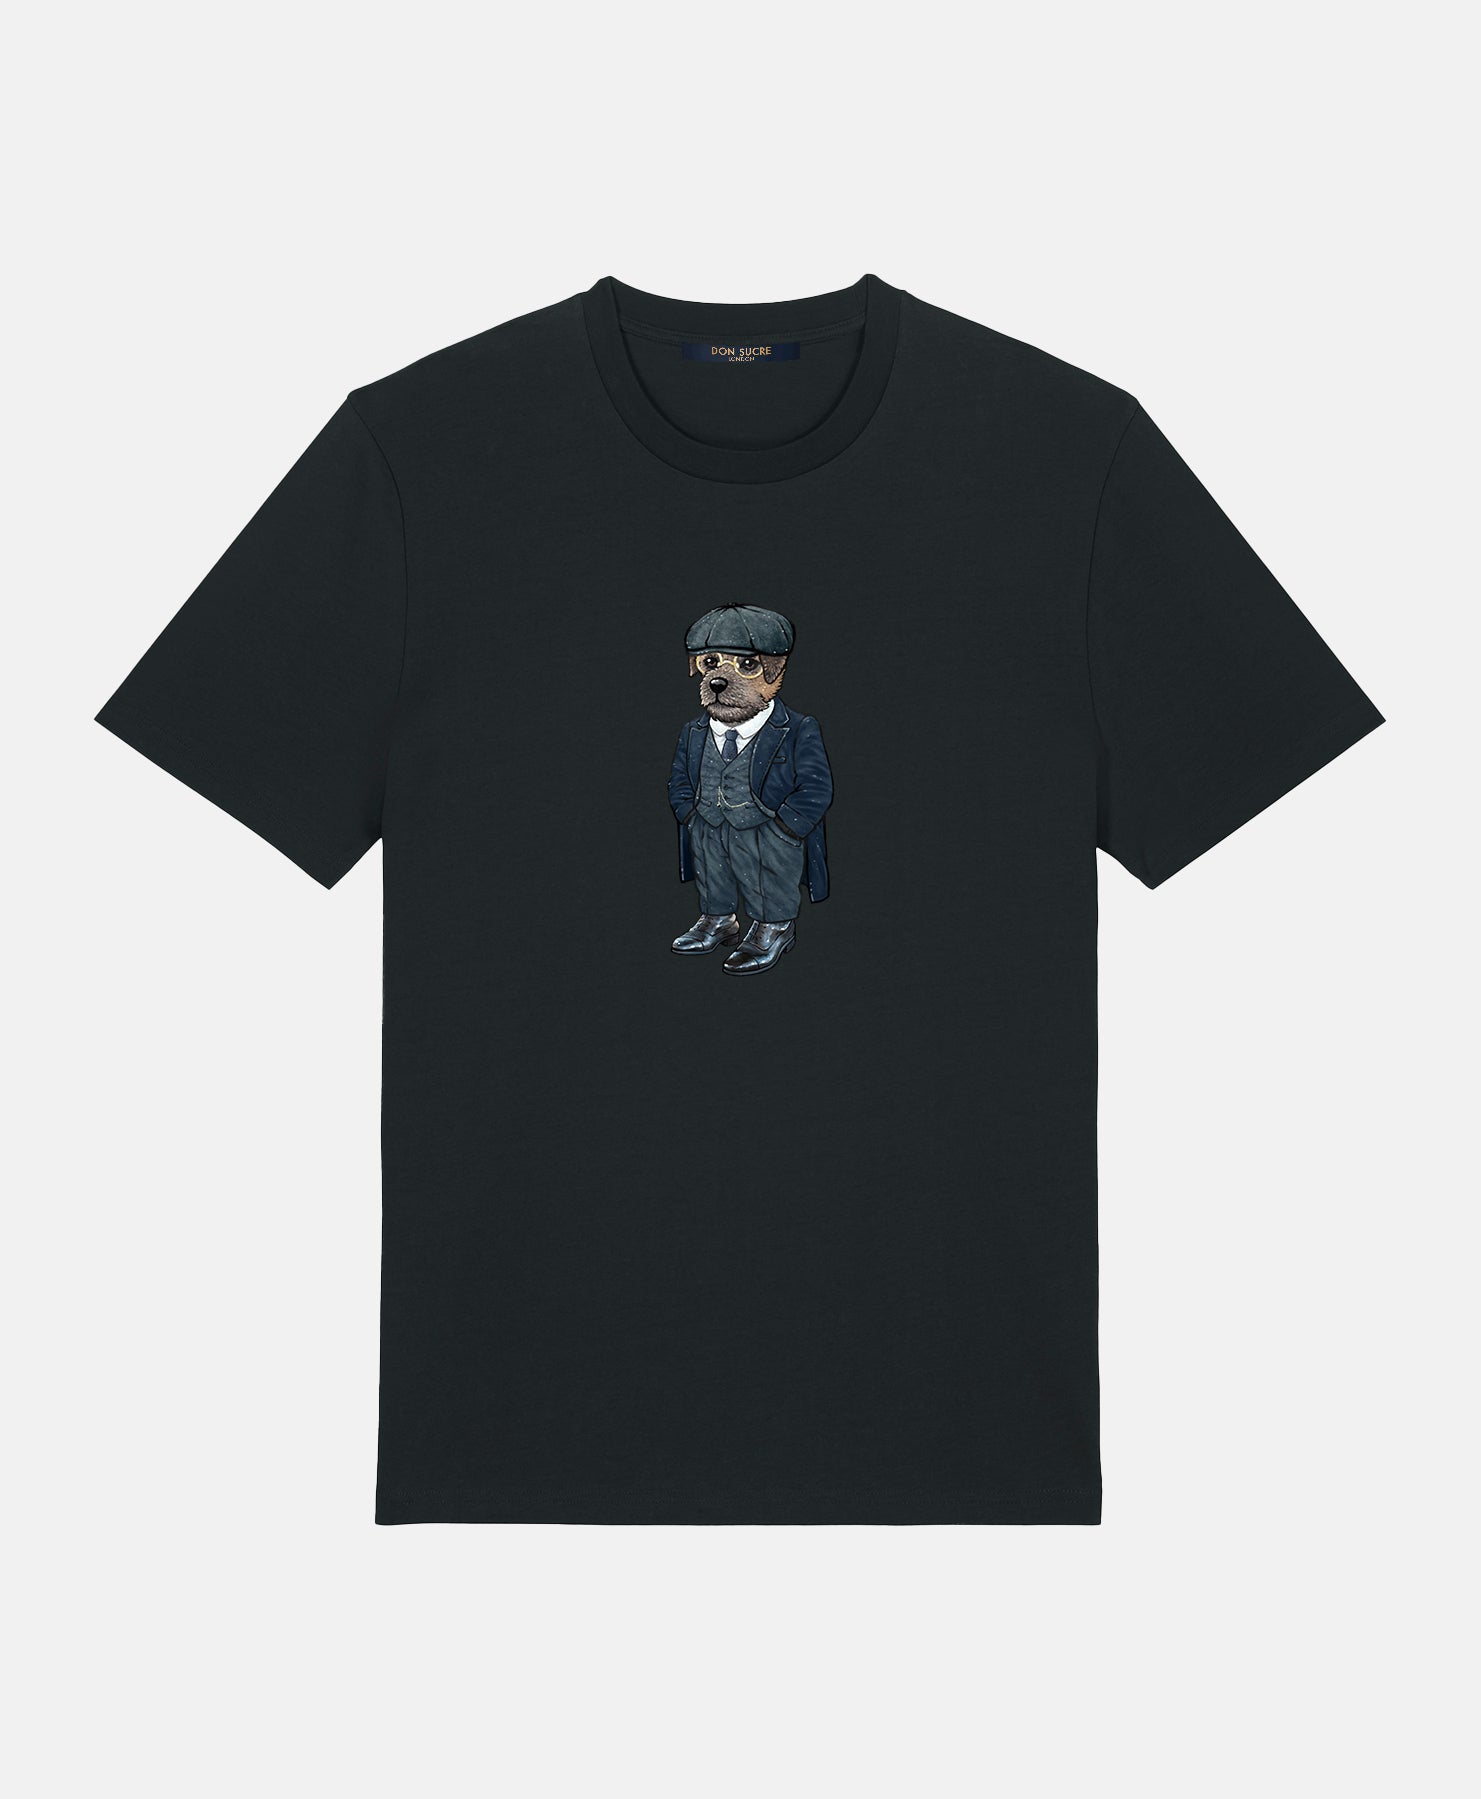 Border Terrier T-Shirt Black